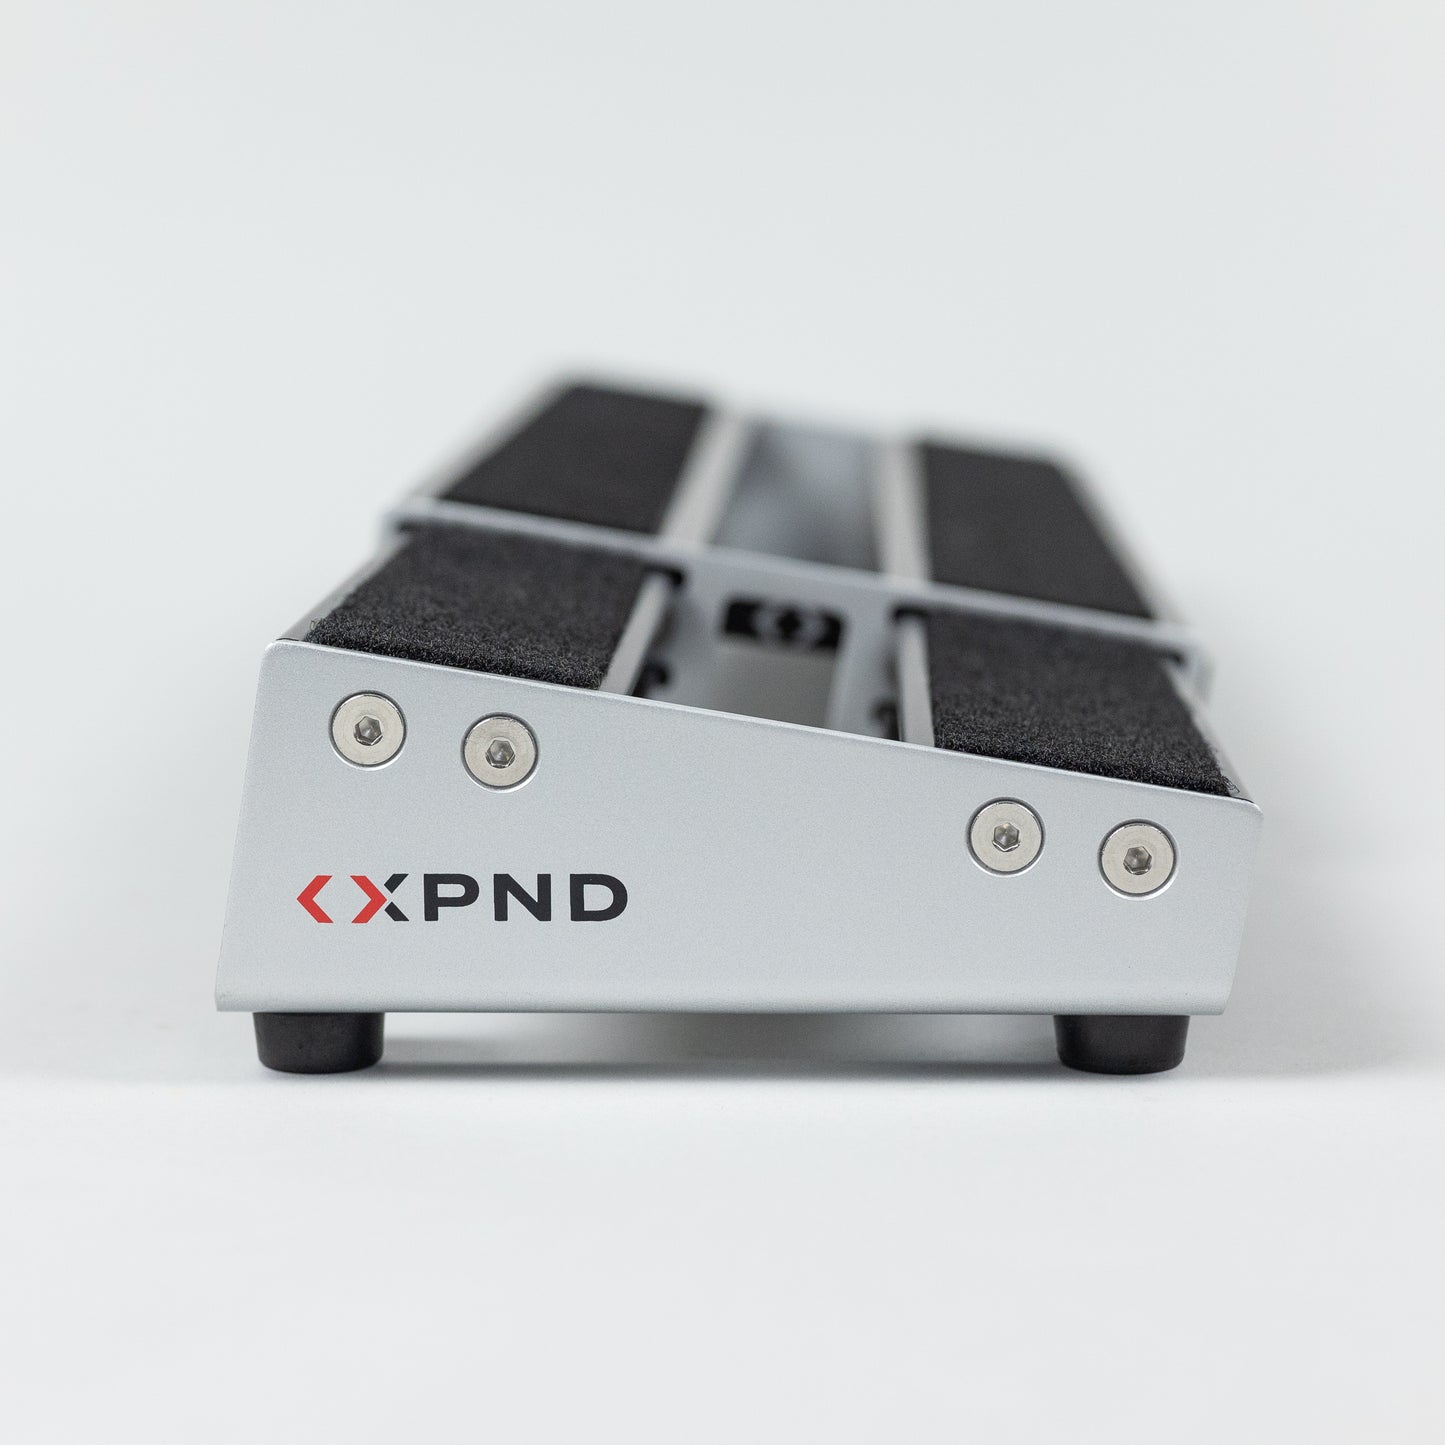 D'Addario XPND 1 Expanding Single Row Pedalboard